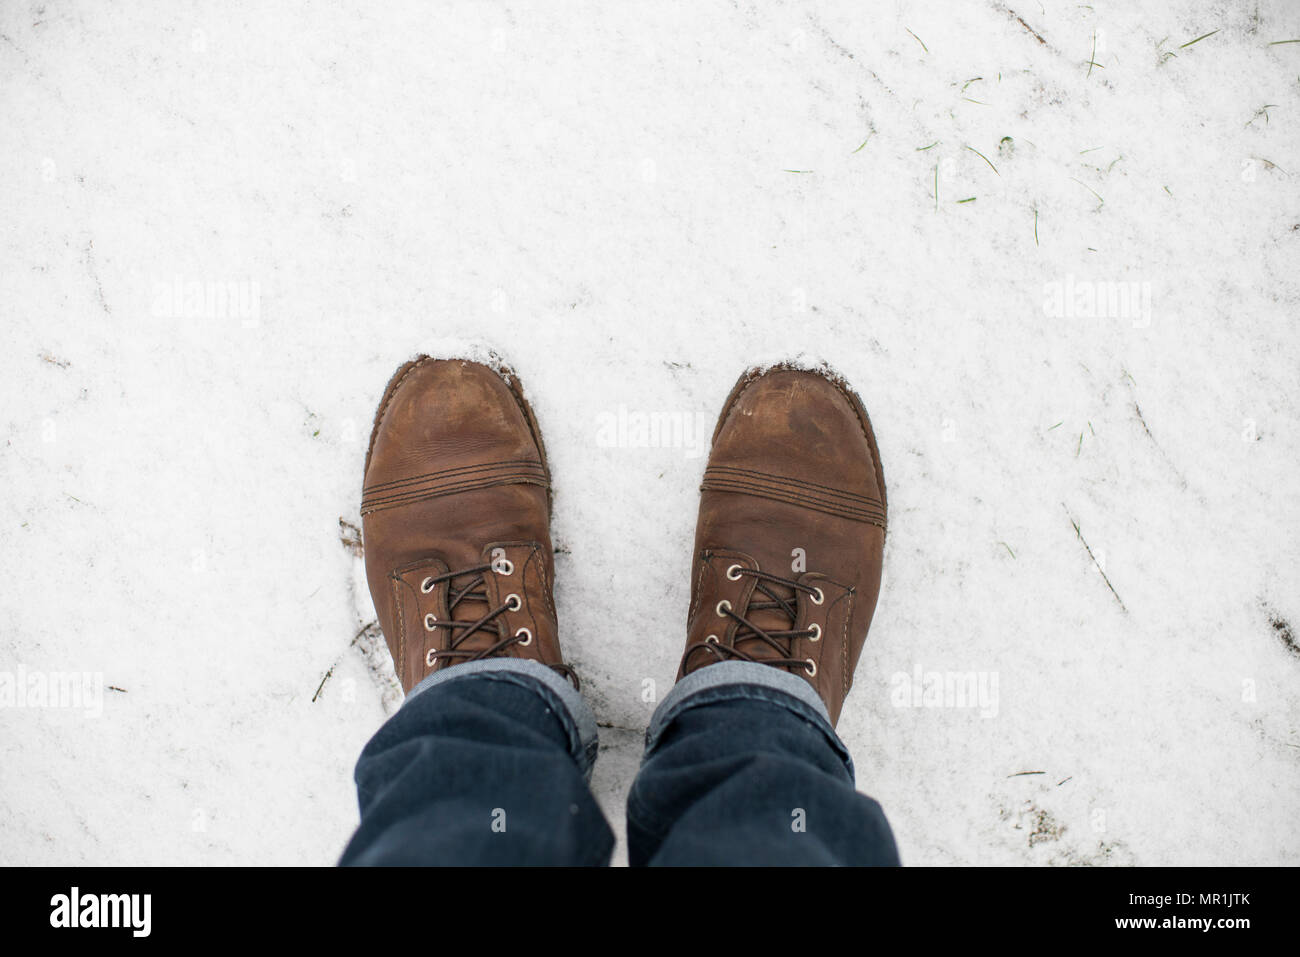 Pieds d'un homme portant des bottes de travail de l'aile rouge et bleu jeans debout dans la neige. Banque D'Images